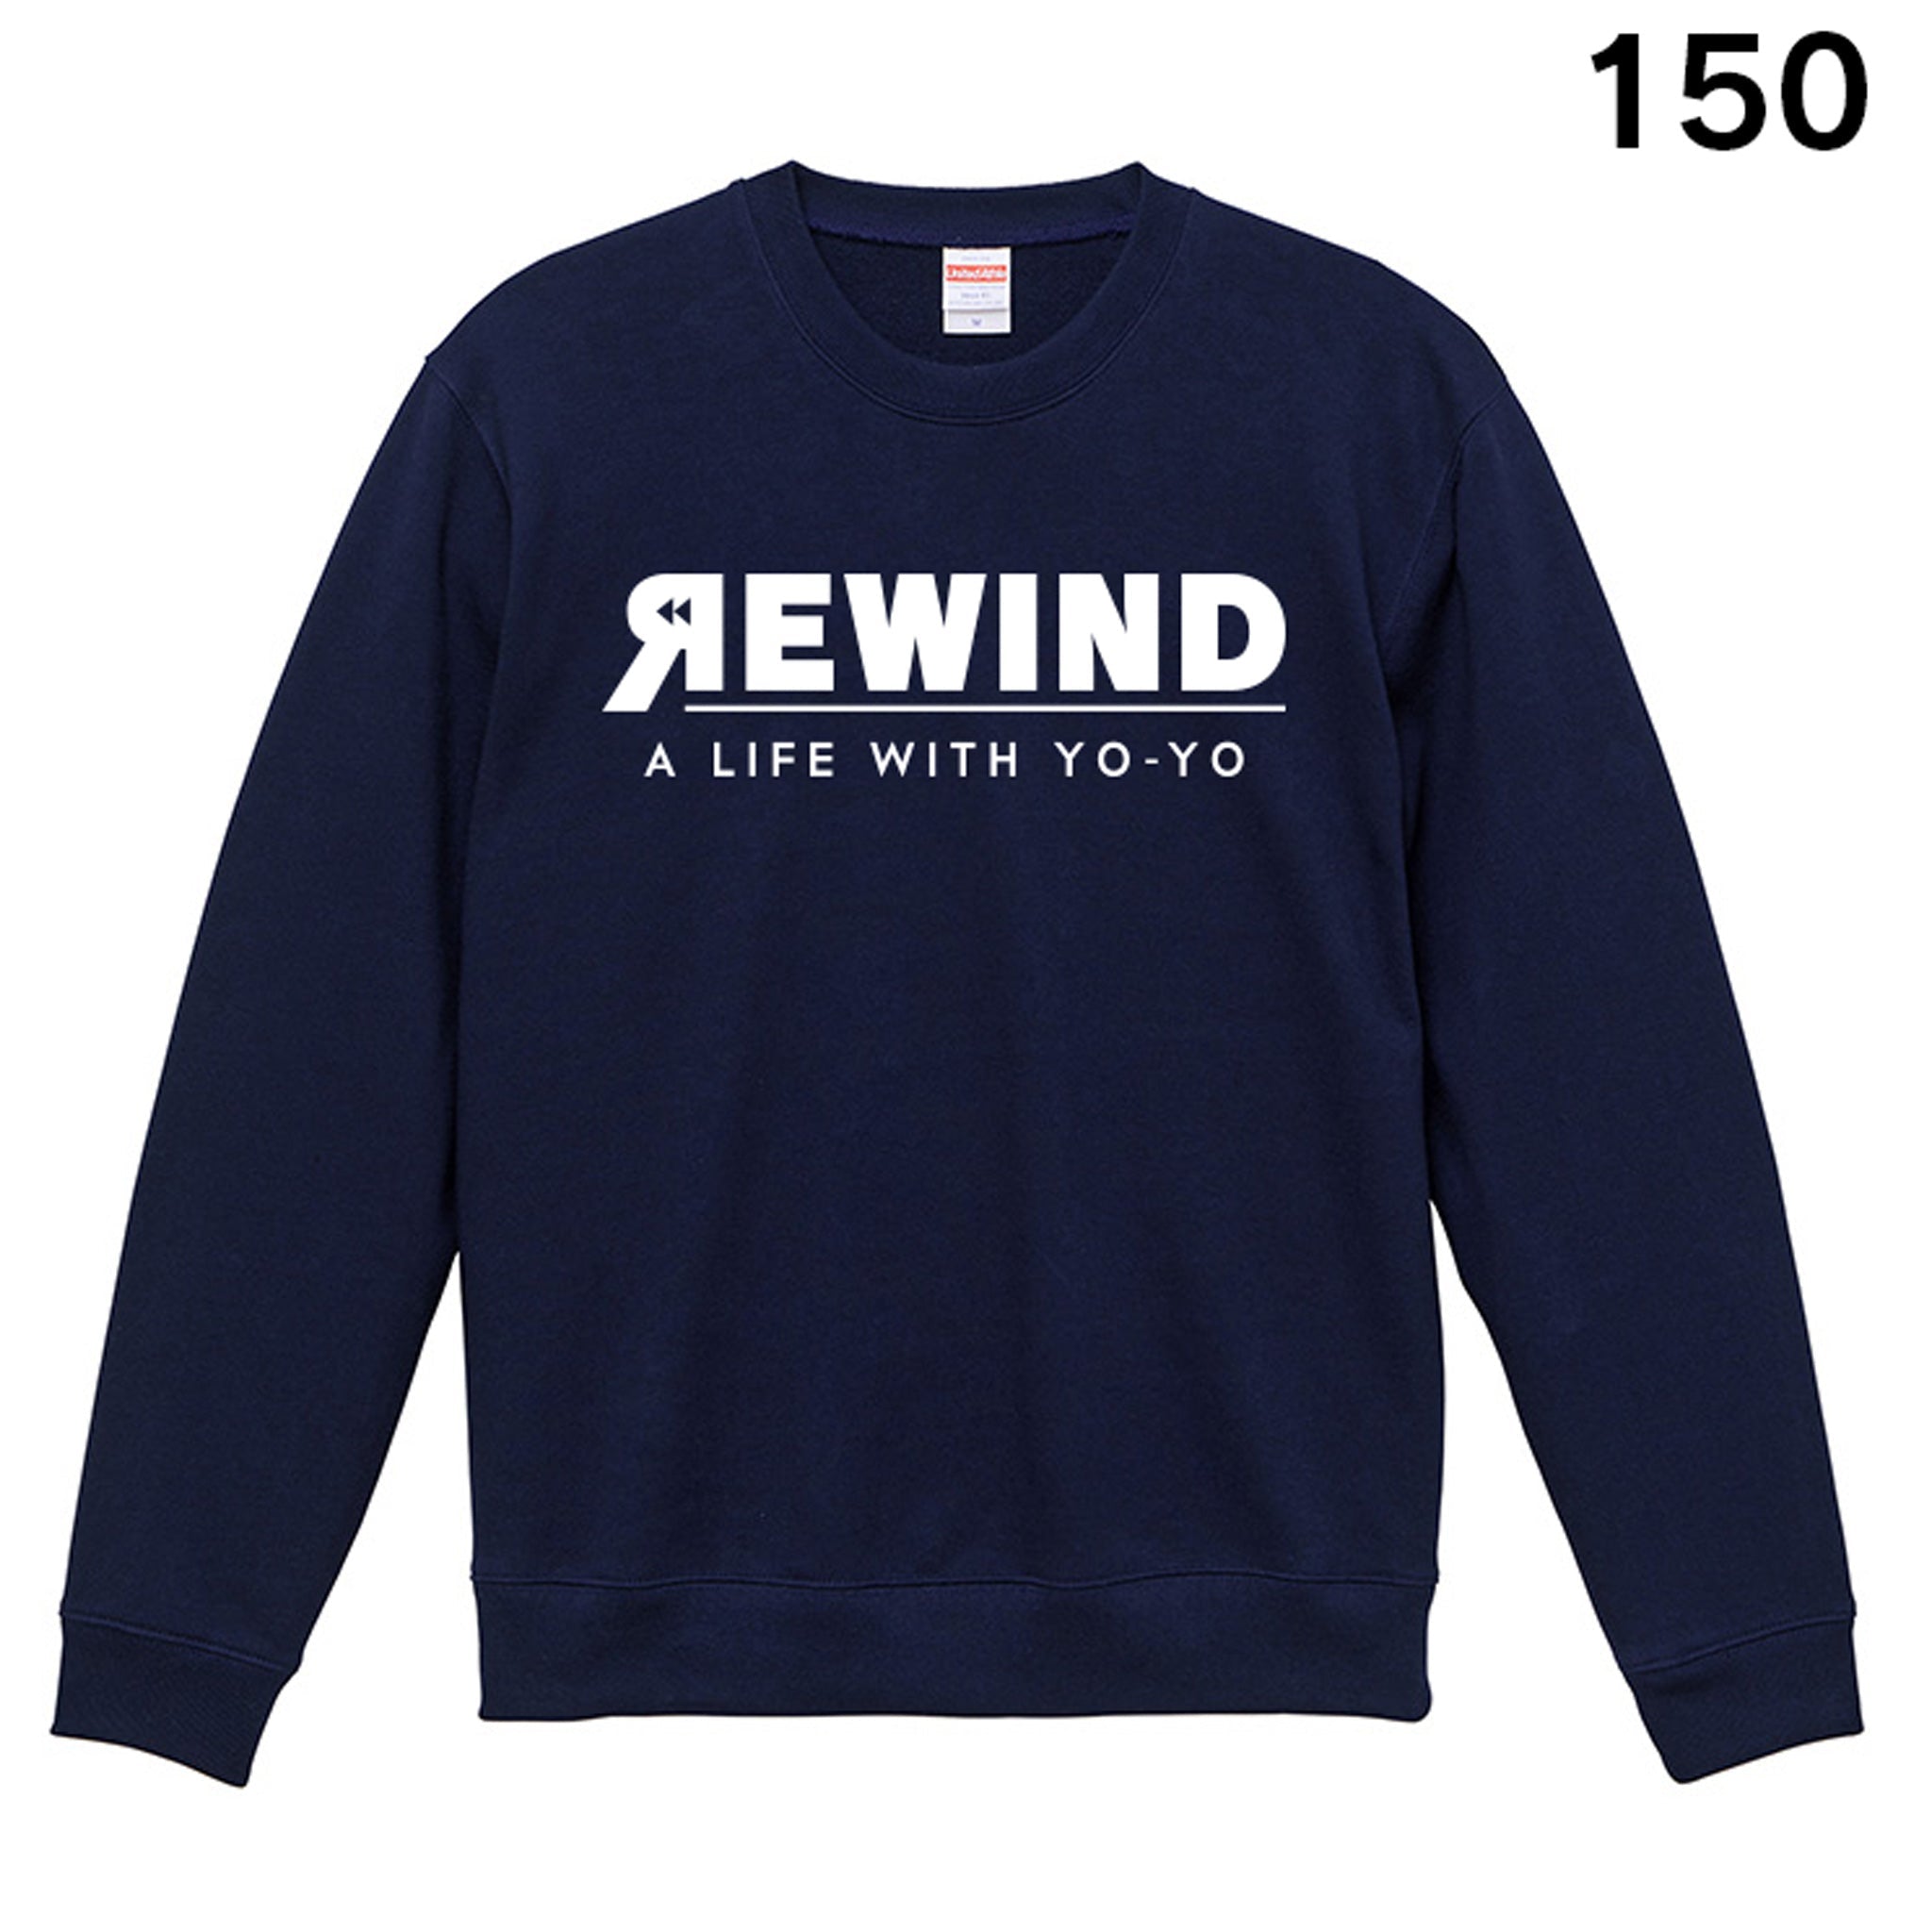 REWIND -A LIFE WITH YO-YO- Sweat (Navy / White Logo)